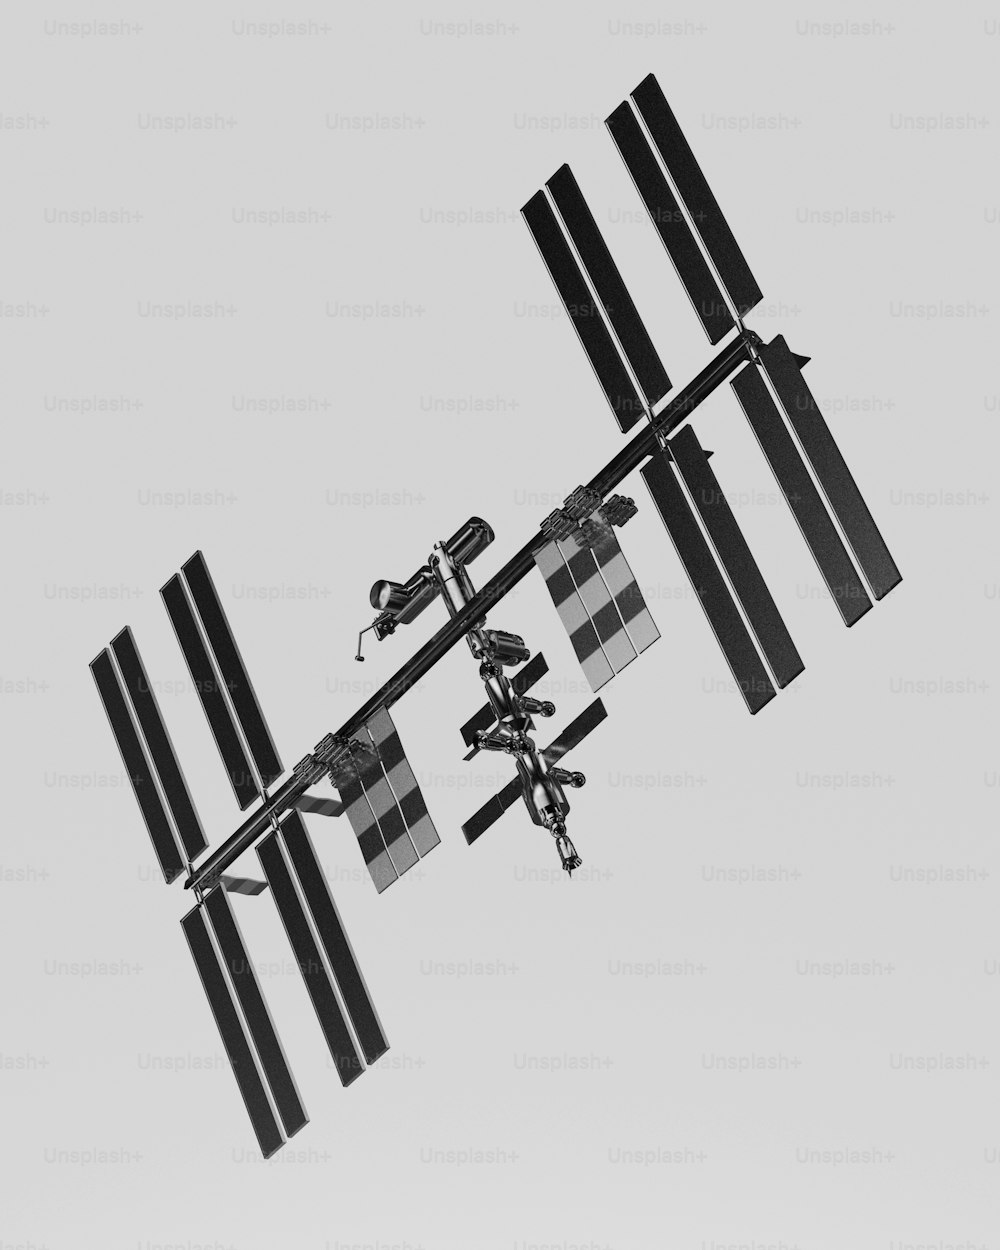 衛星放送受信アンテナの白黒写真